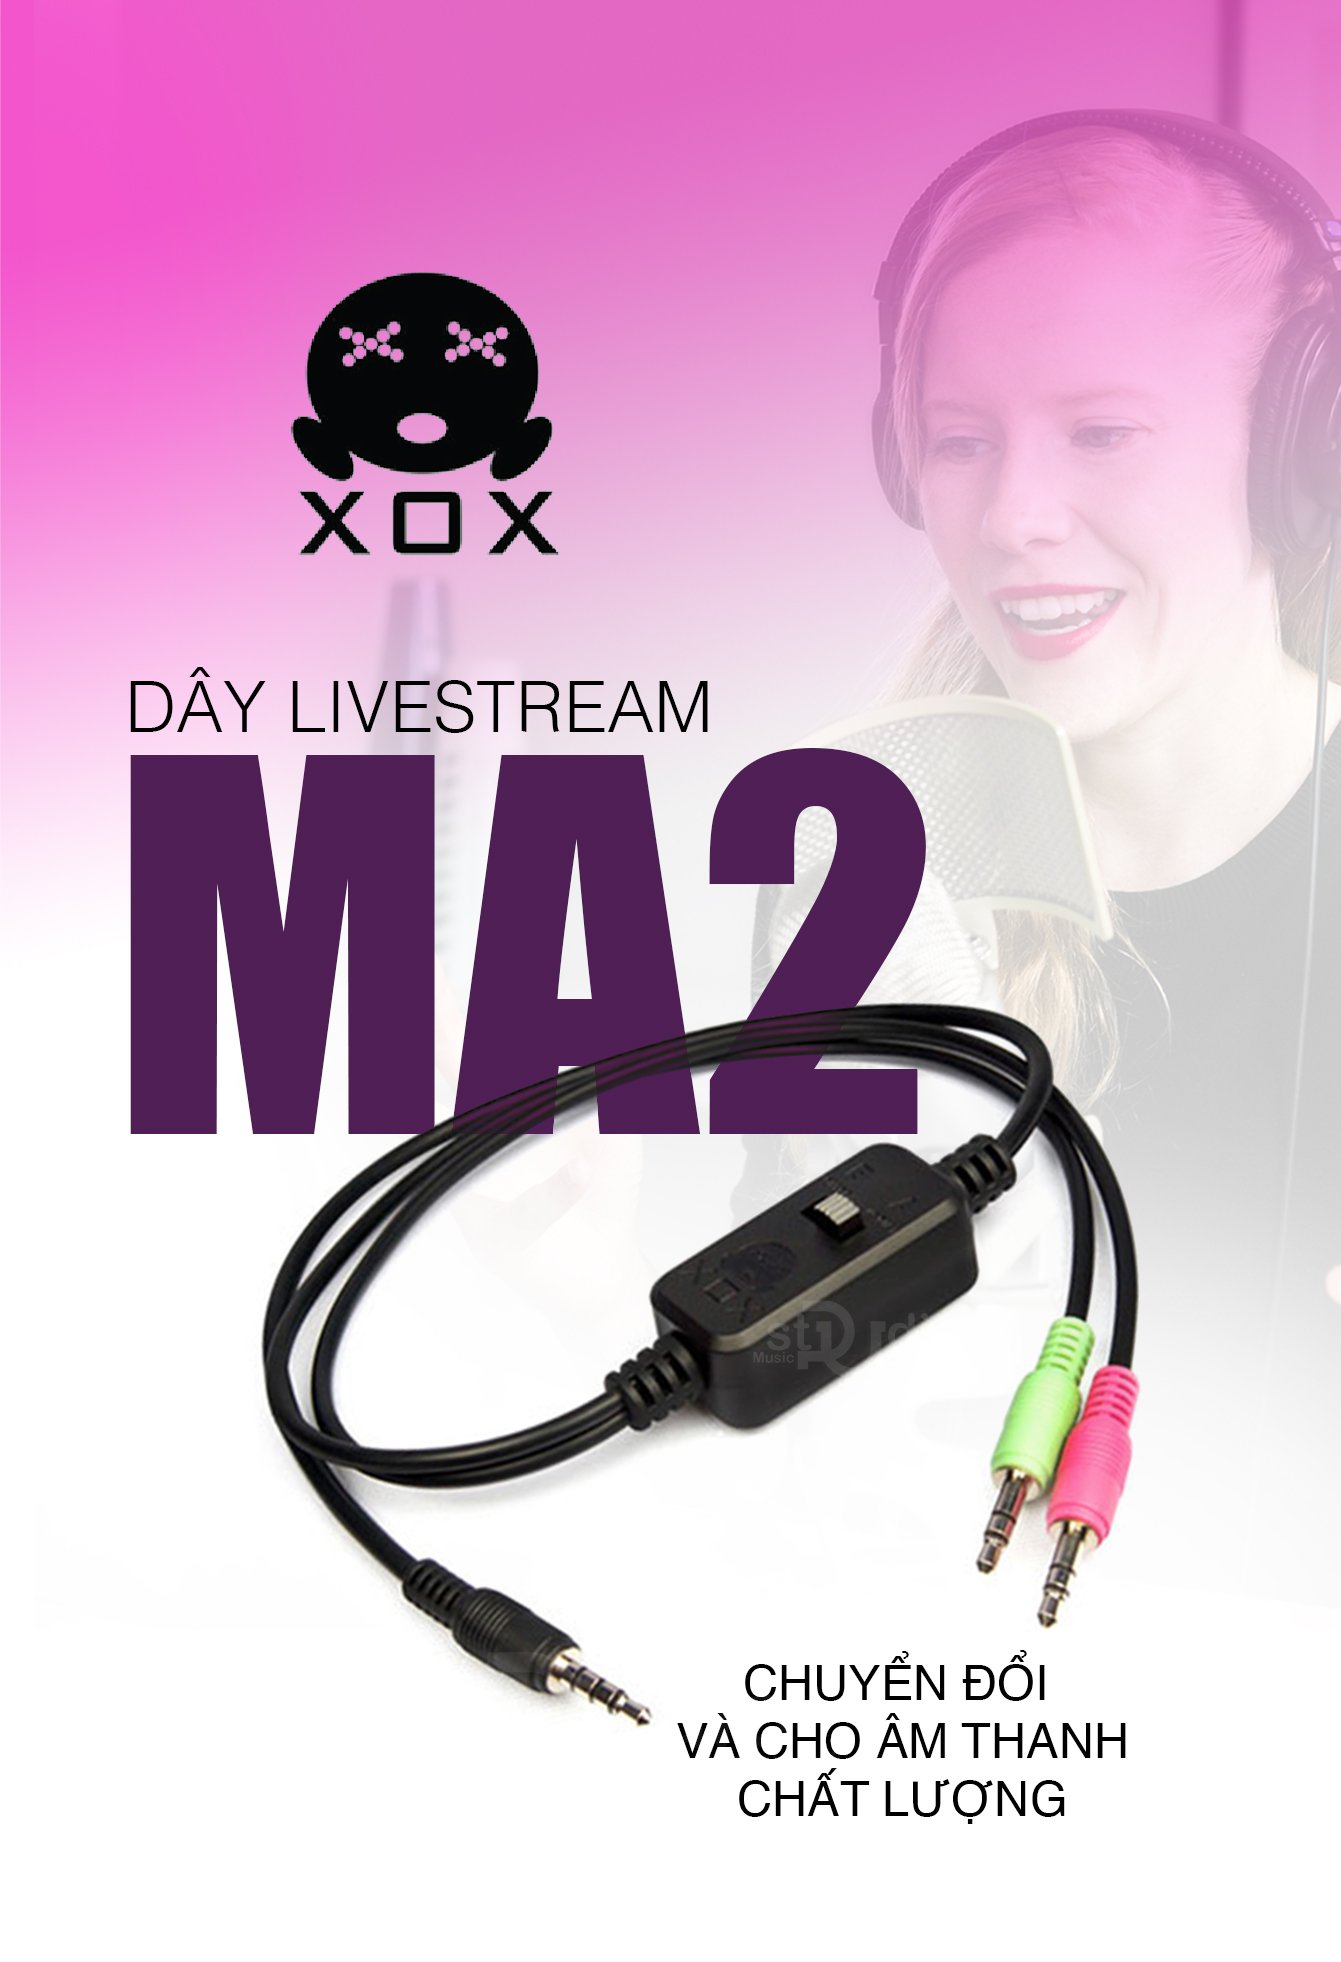 Dây livestream XOX MA2 (Mono), Dây livestream 3 màu âm thanh chất lượng